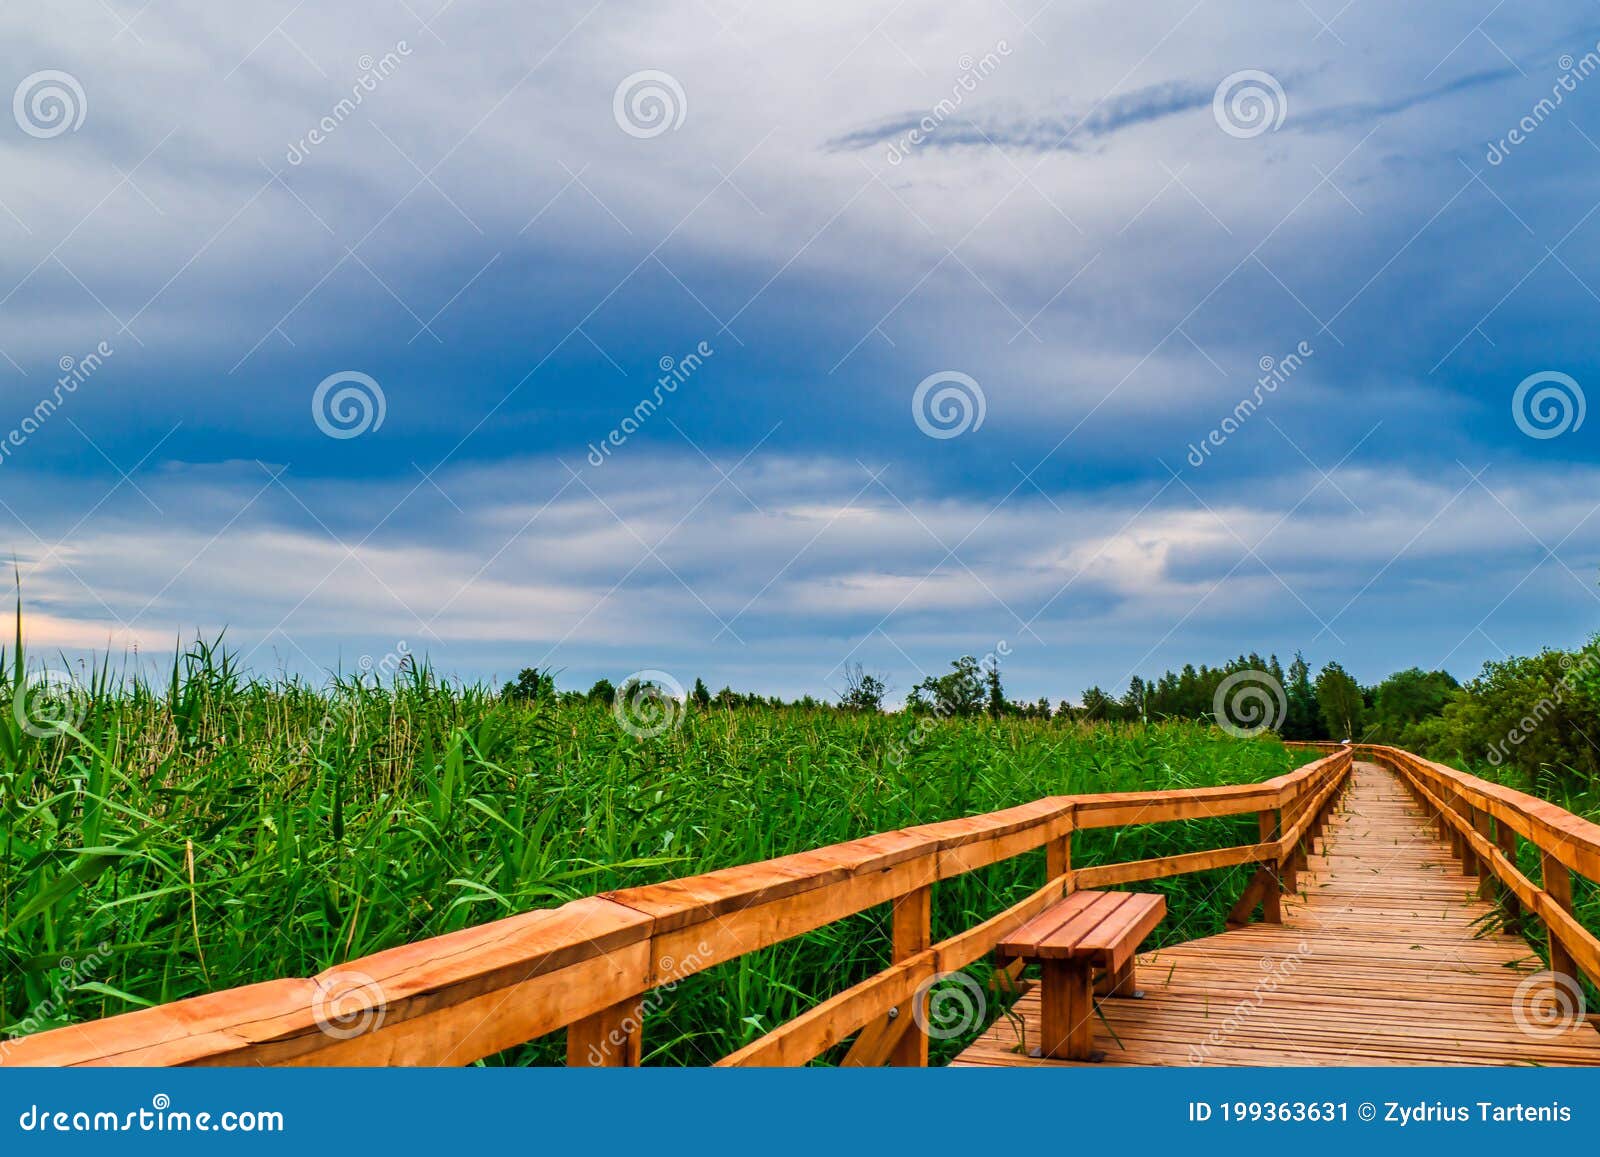 Wetland Park Wooden Walkway The Long Wooden Bridge Above The Water